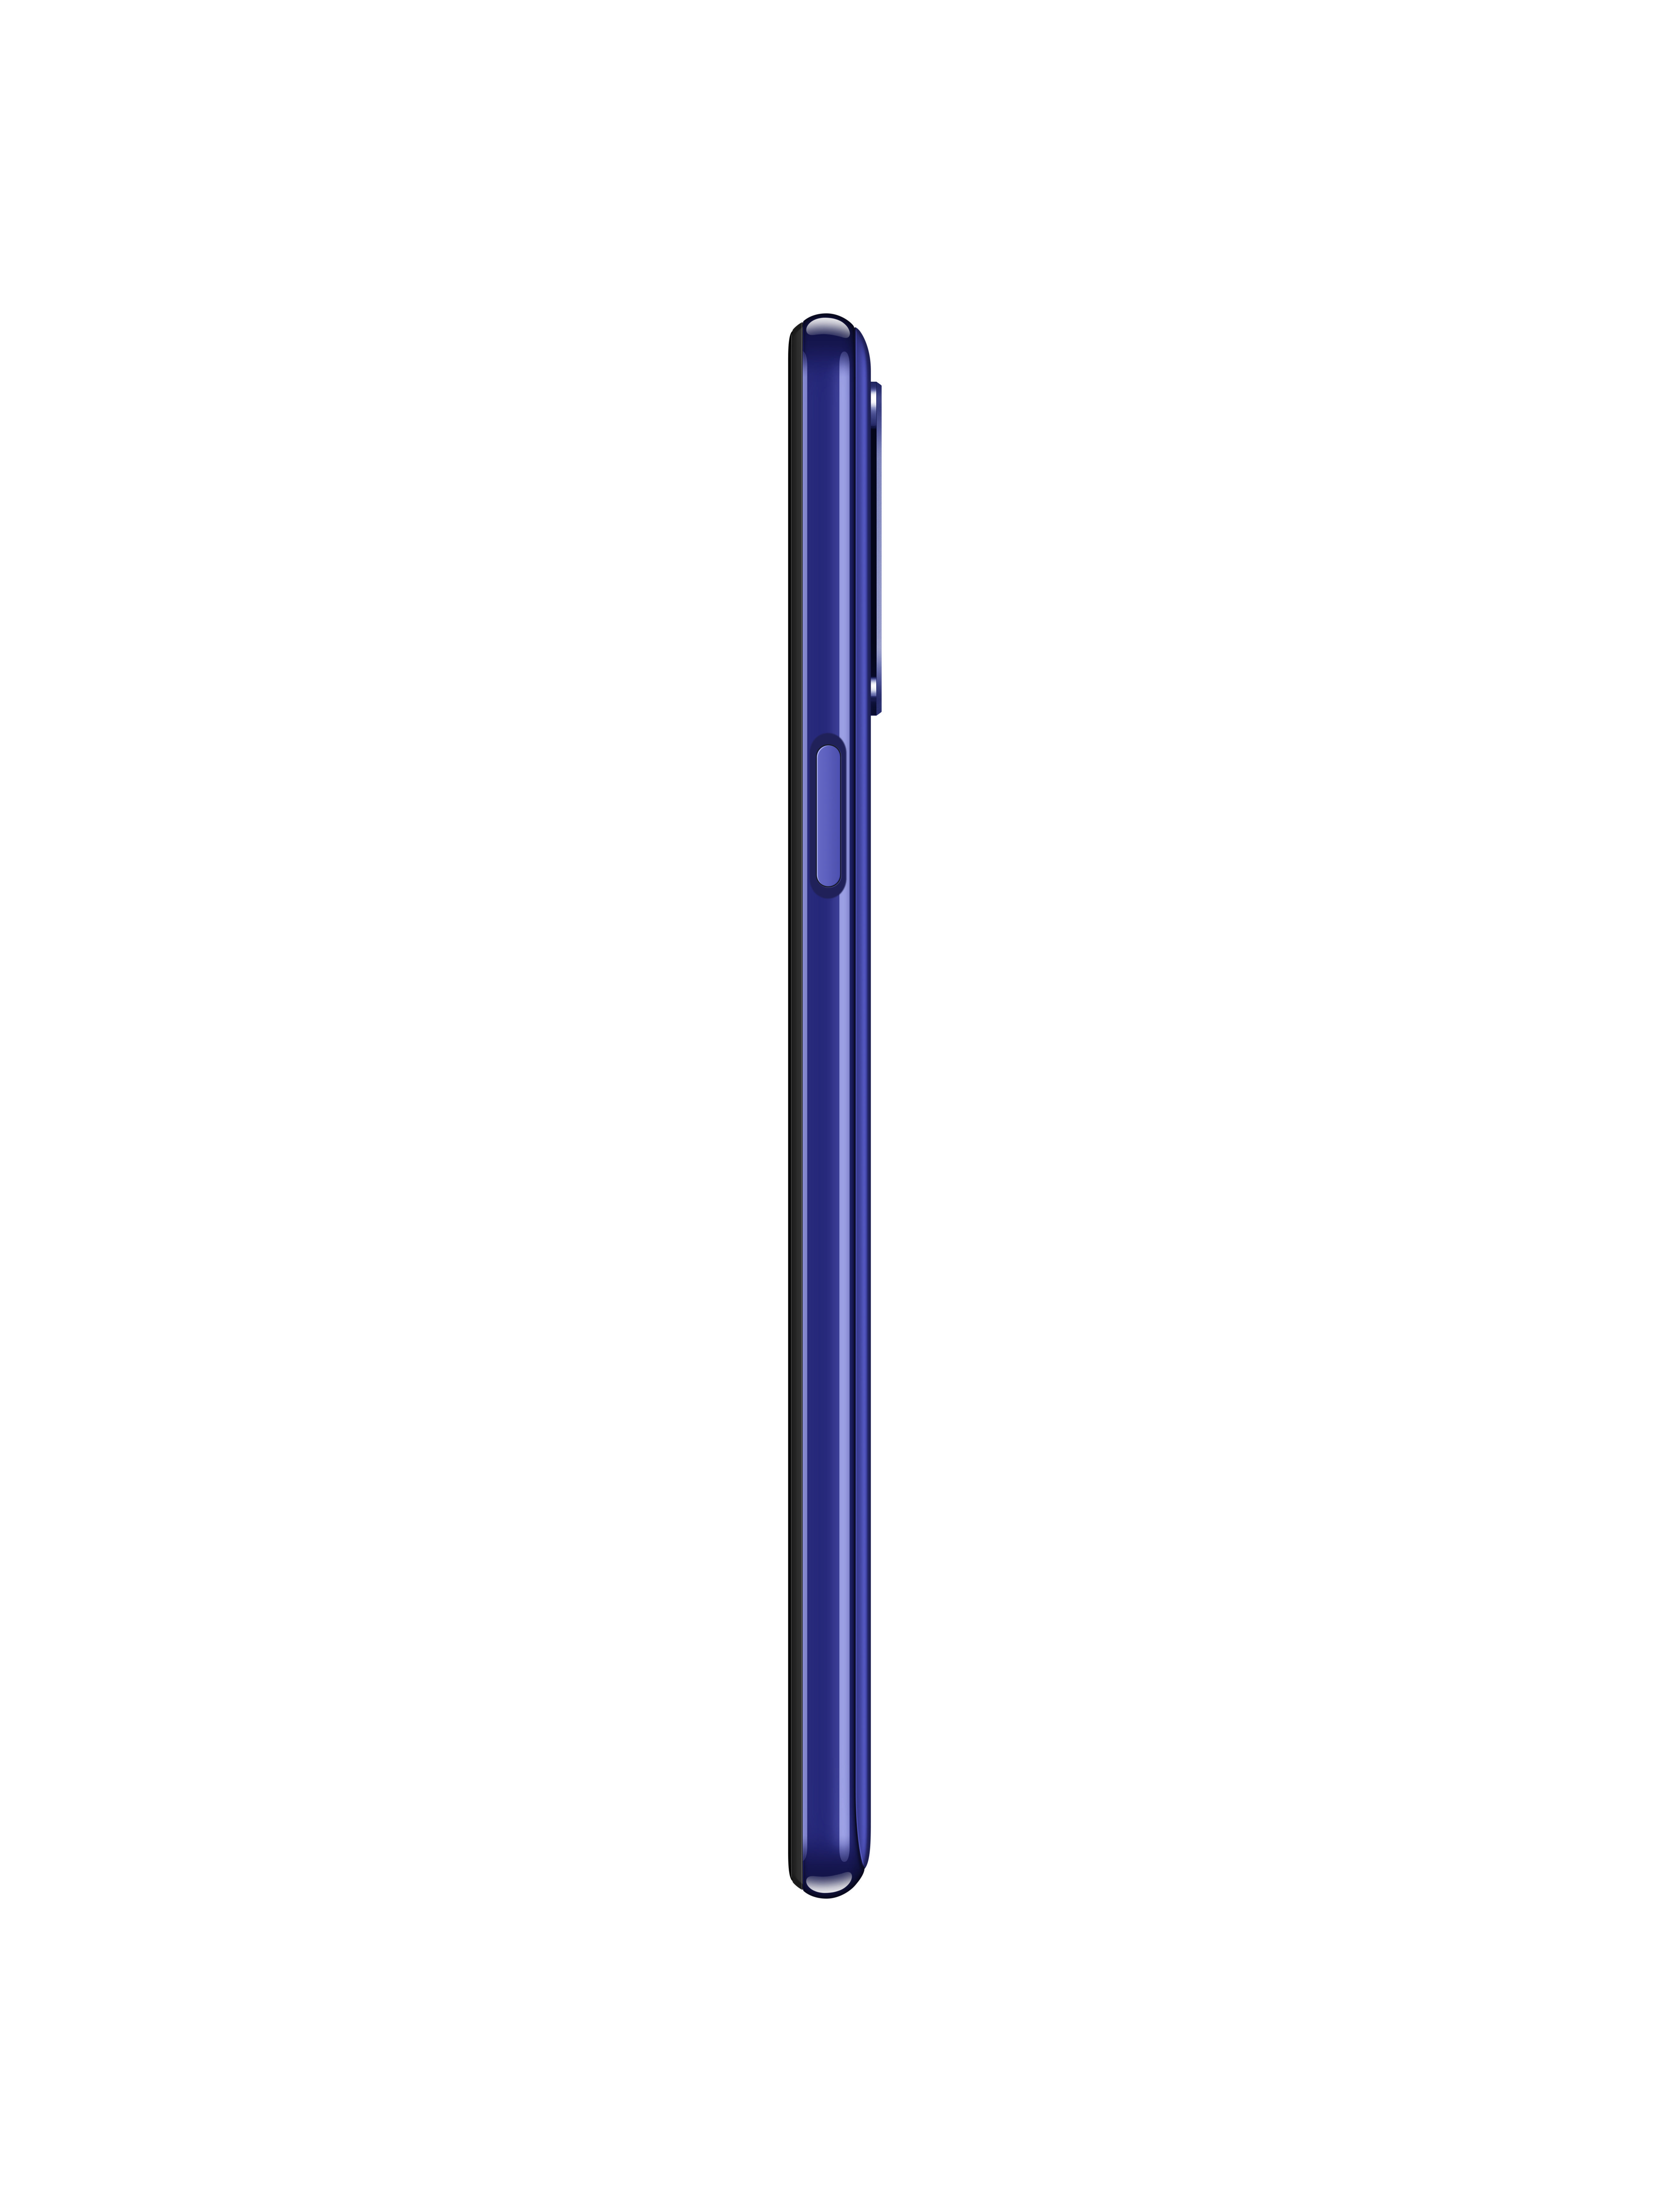 SIM K52 Blau Dual LG 64 GB